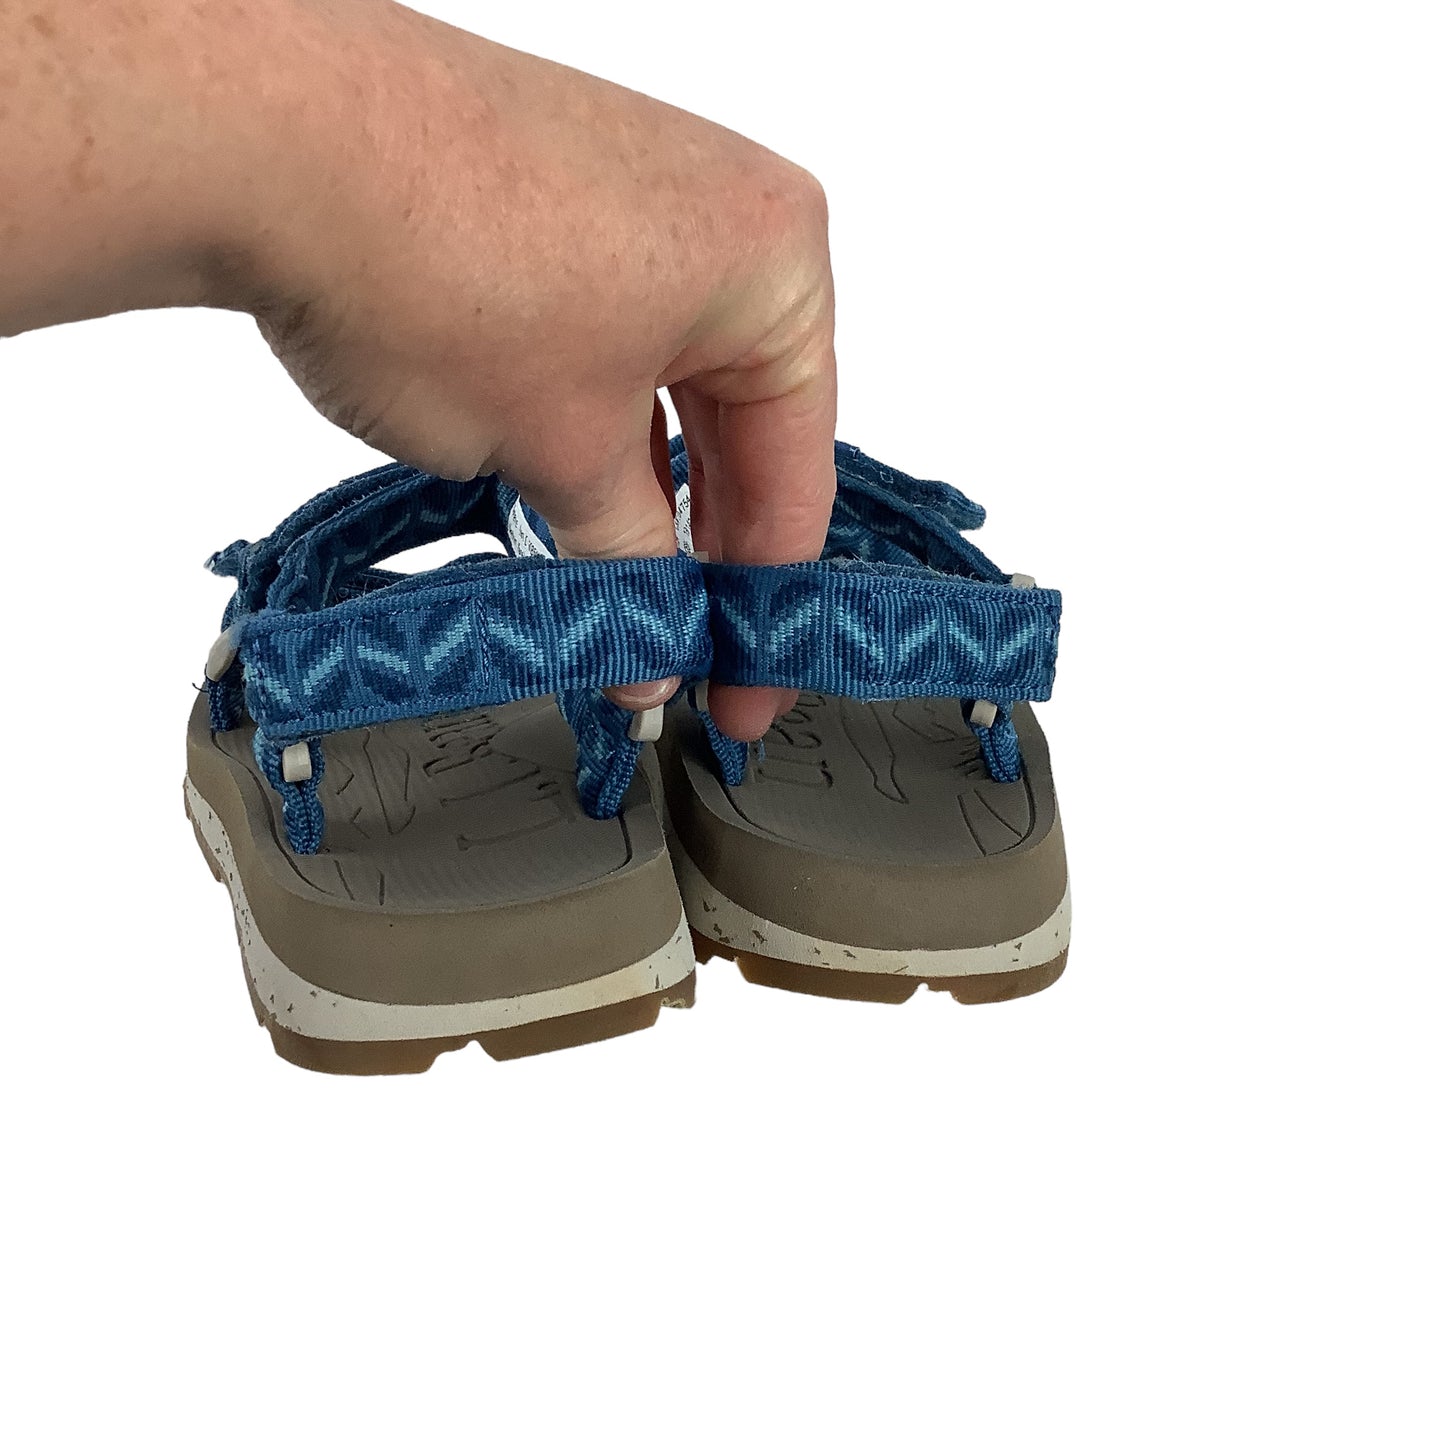 Sandals Flats By L.l. Bean  Size: 6